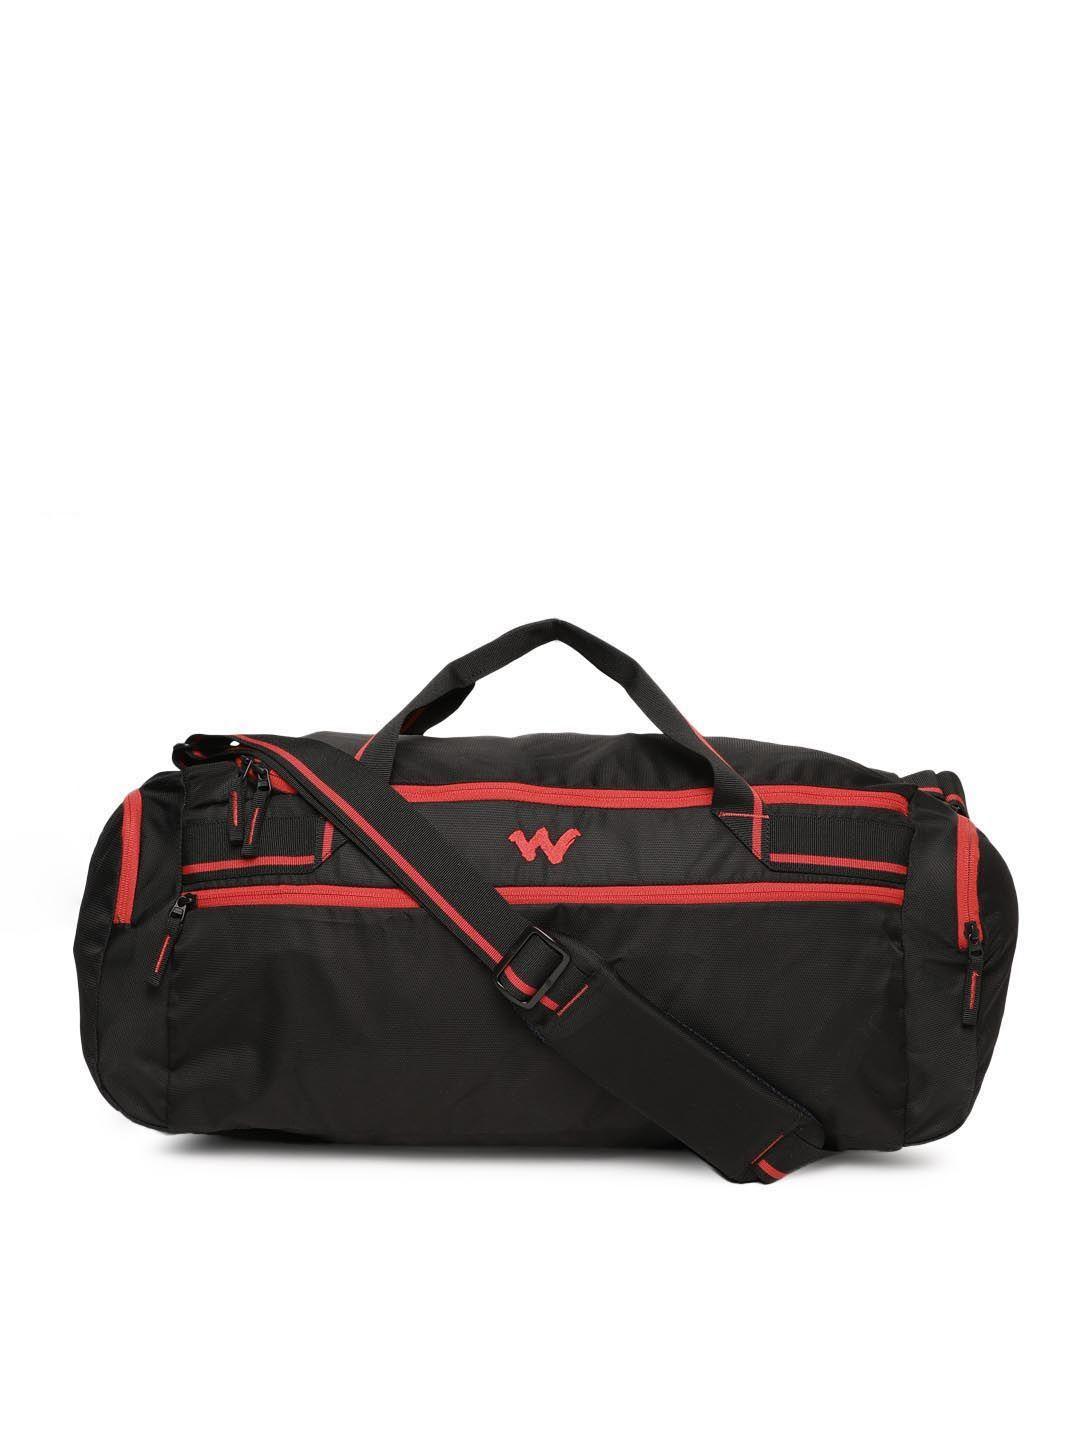 wildcraft men black & red solid duffel bag